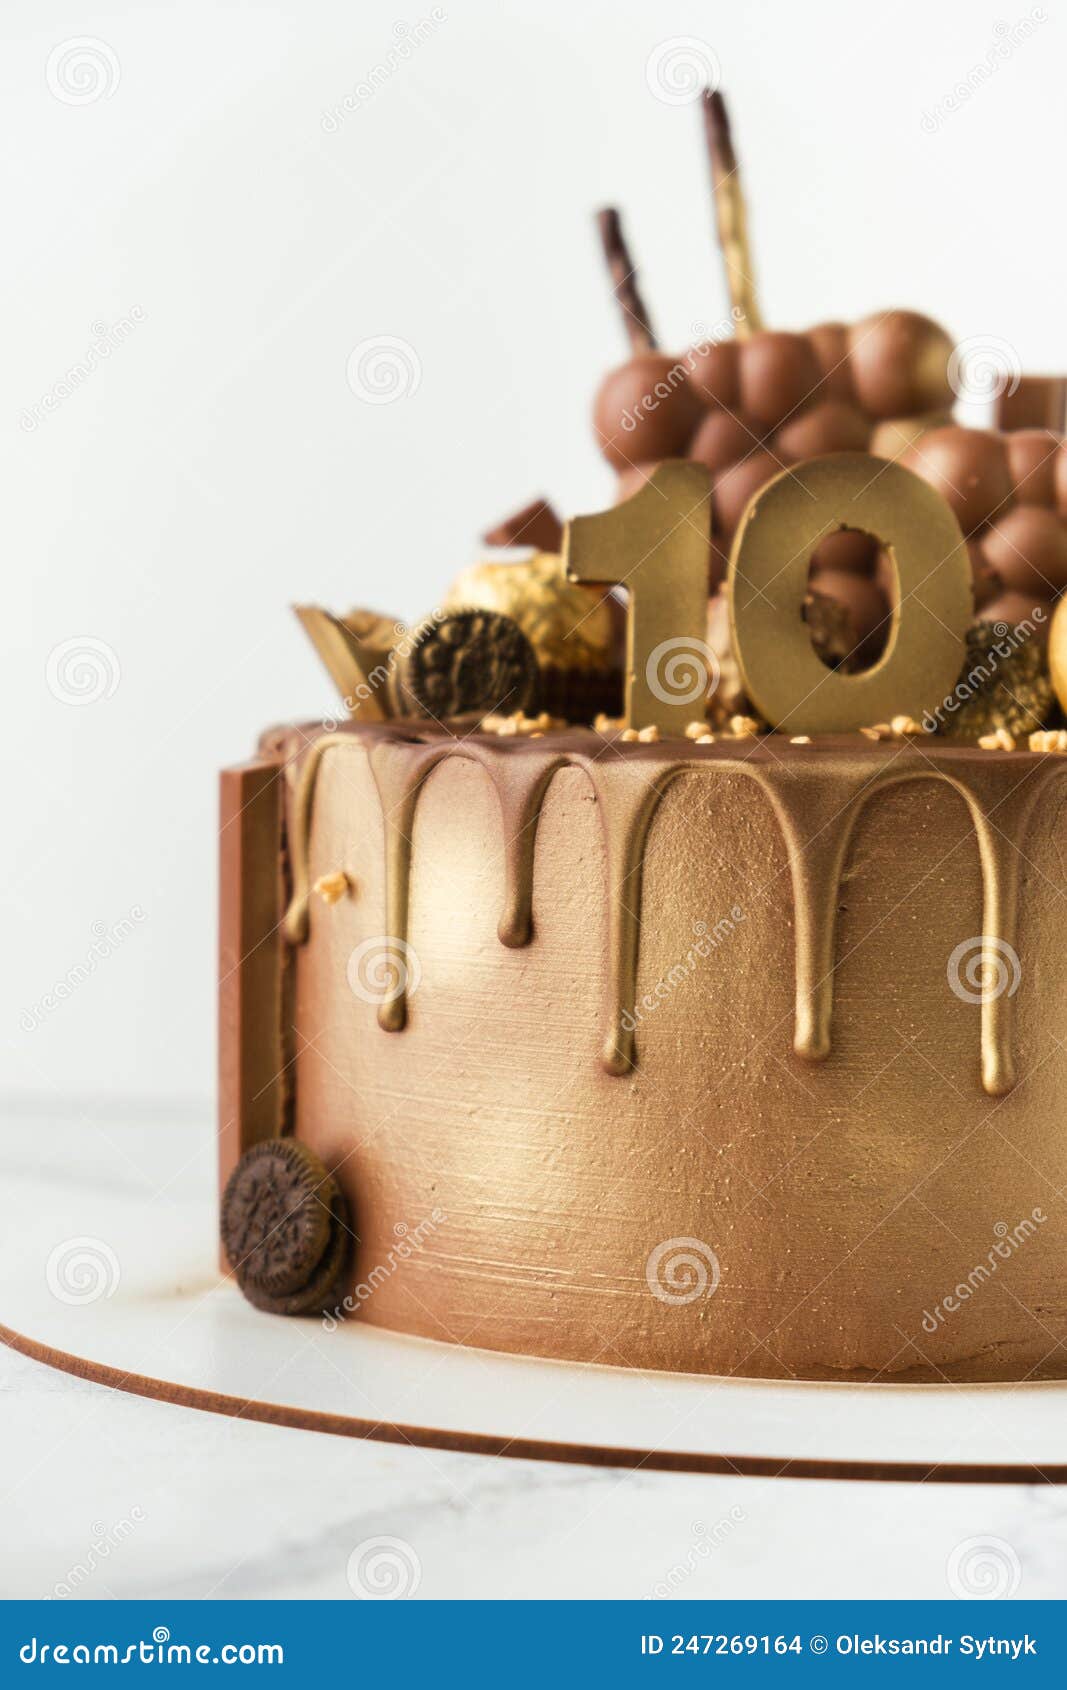 Украшение торта конфетами и мармеладом - 64 фото